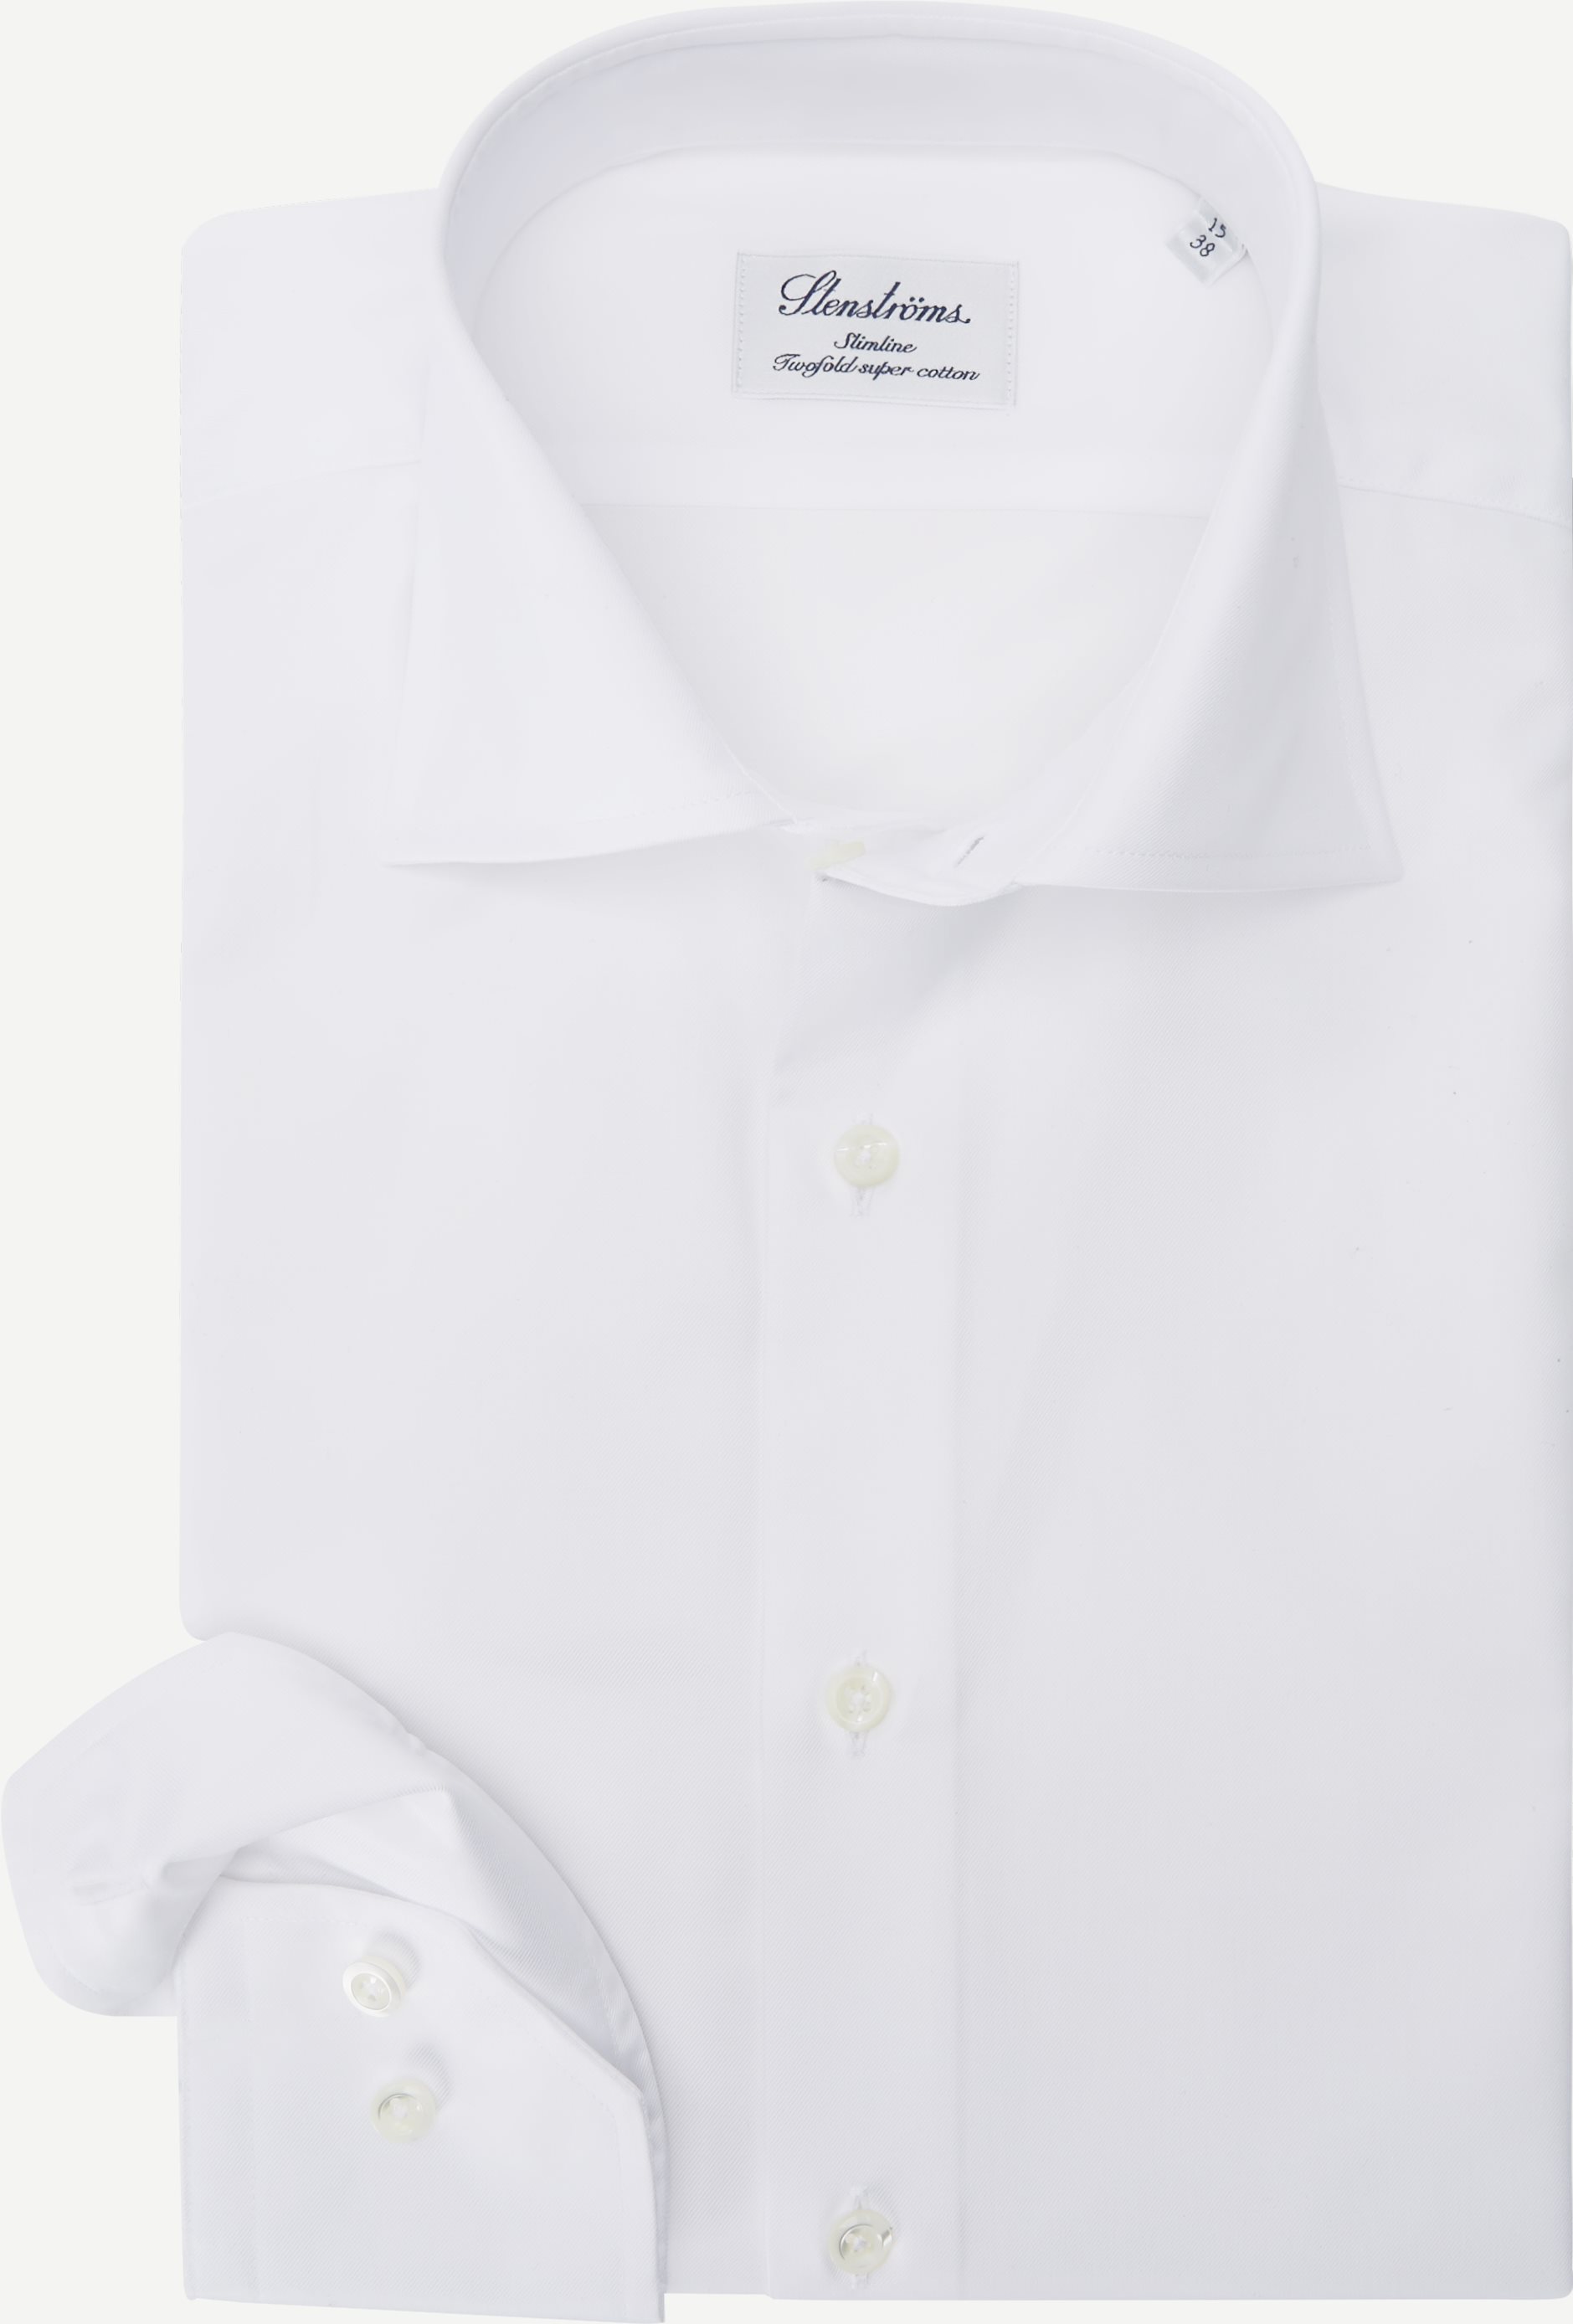 Twofold Super Cotton Skjorte - Skjorter - Slim fit - Hvid